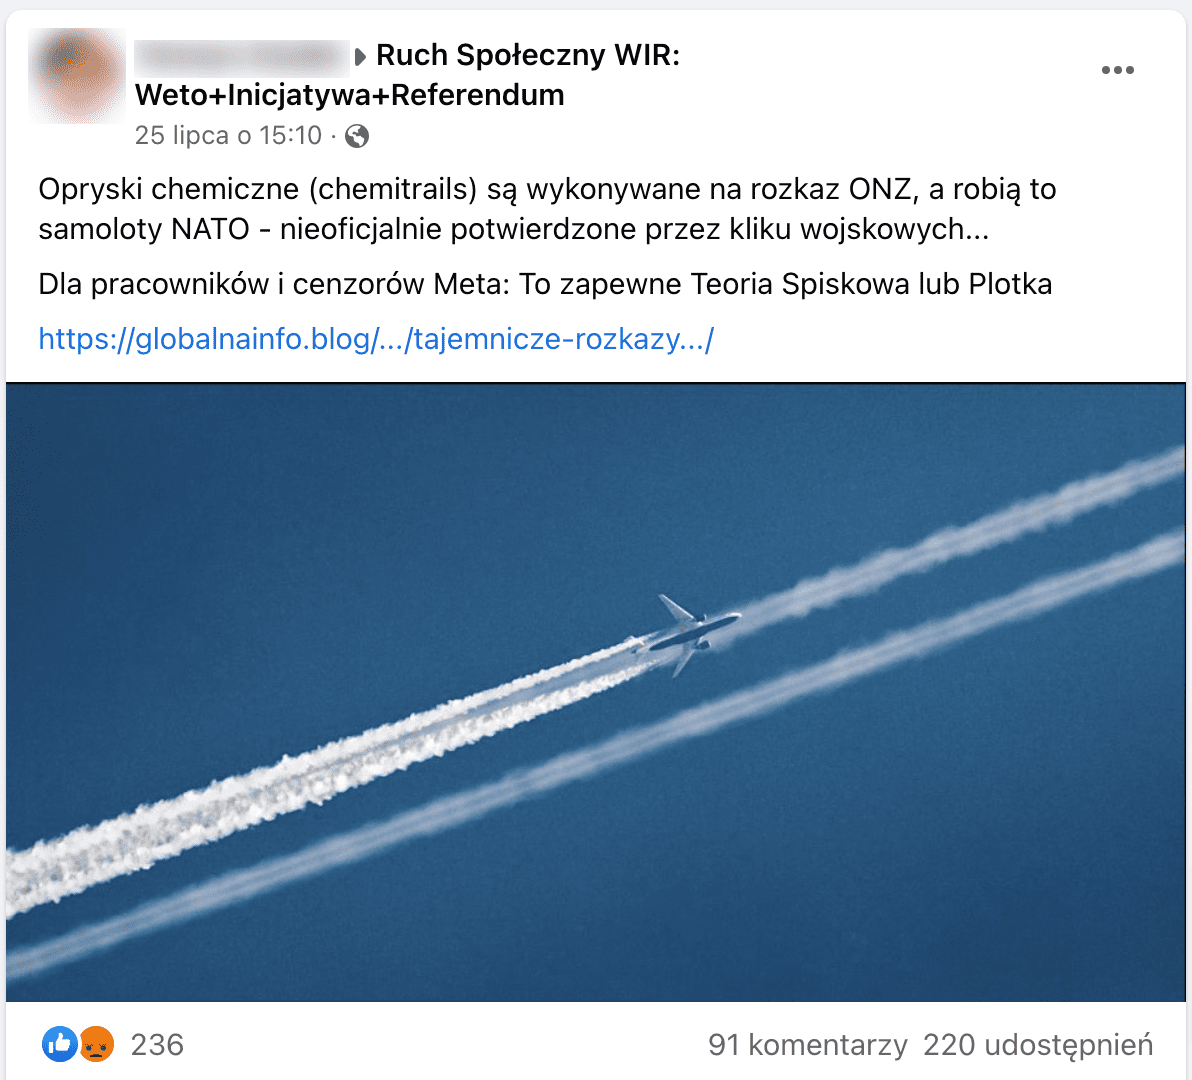 Zrzut ekranu posta na Facebooku. Dołączono do niego zdjęcie samolotu na błękitnym niebie, który zostawia za sobą białe smugi.